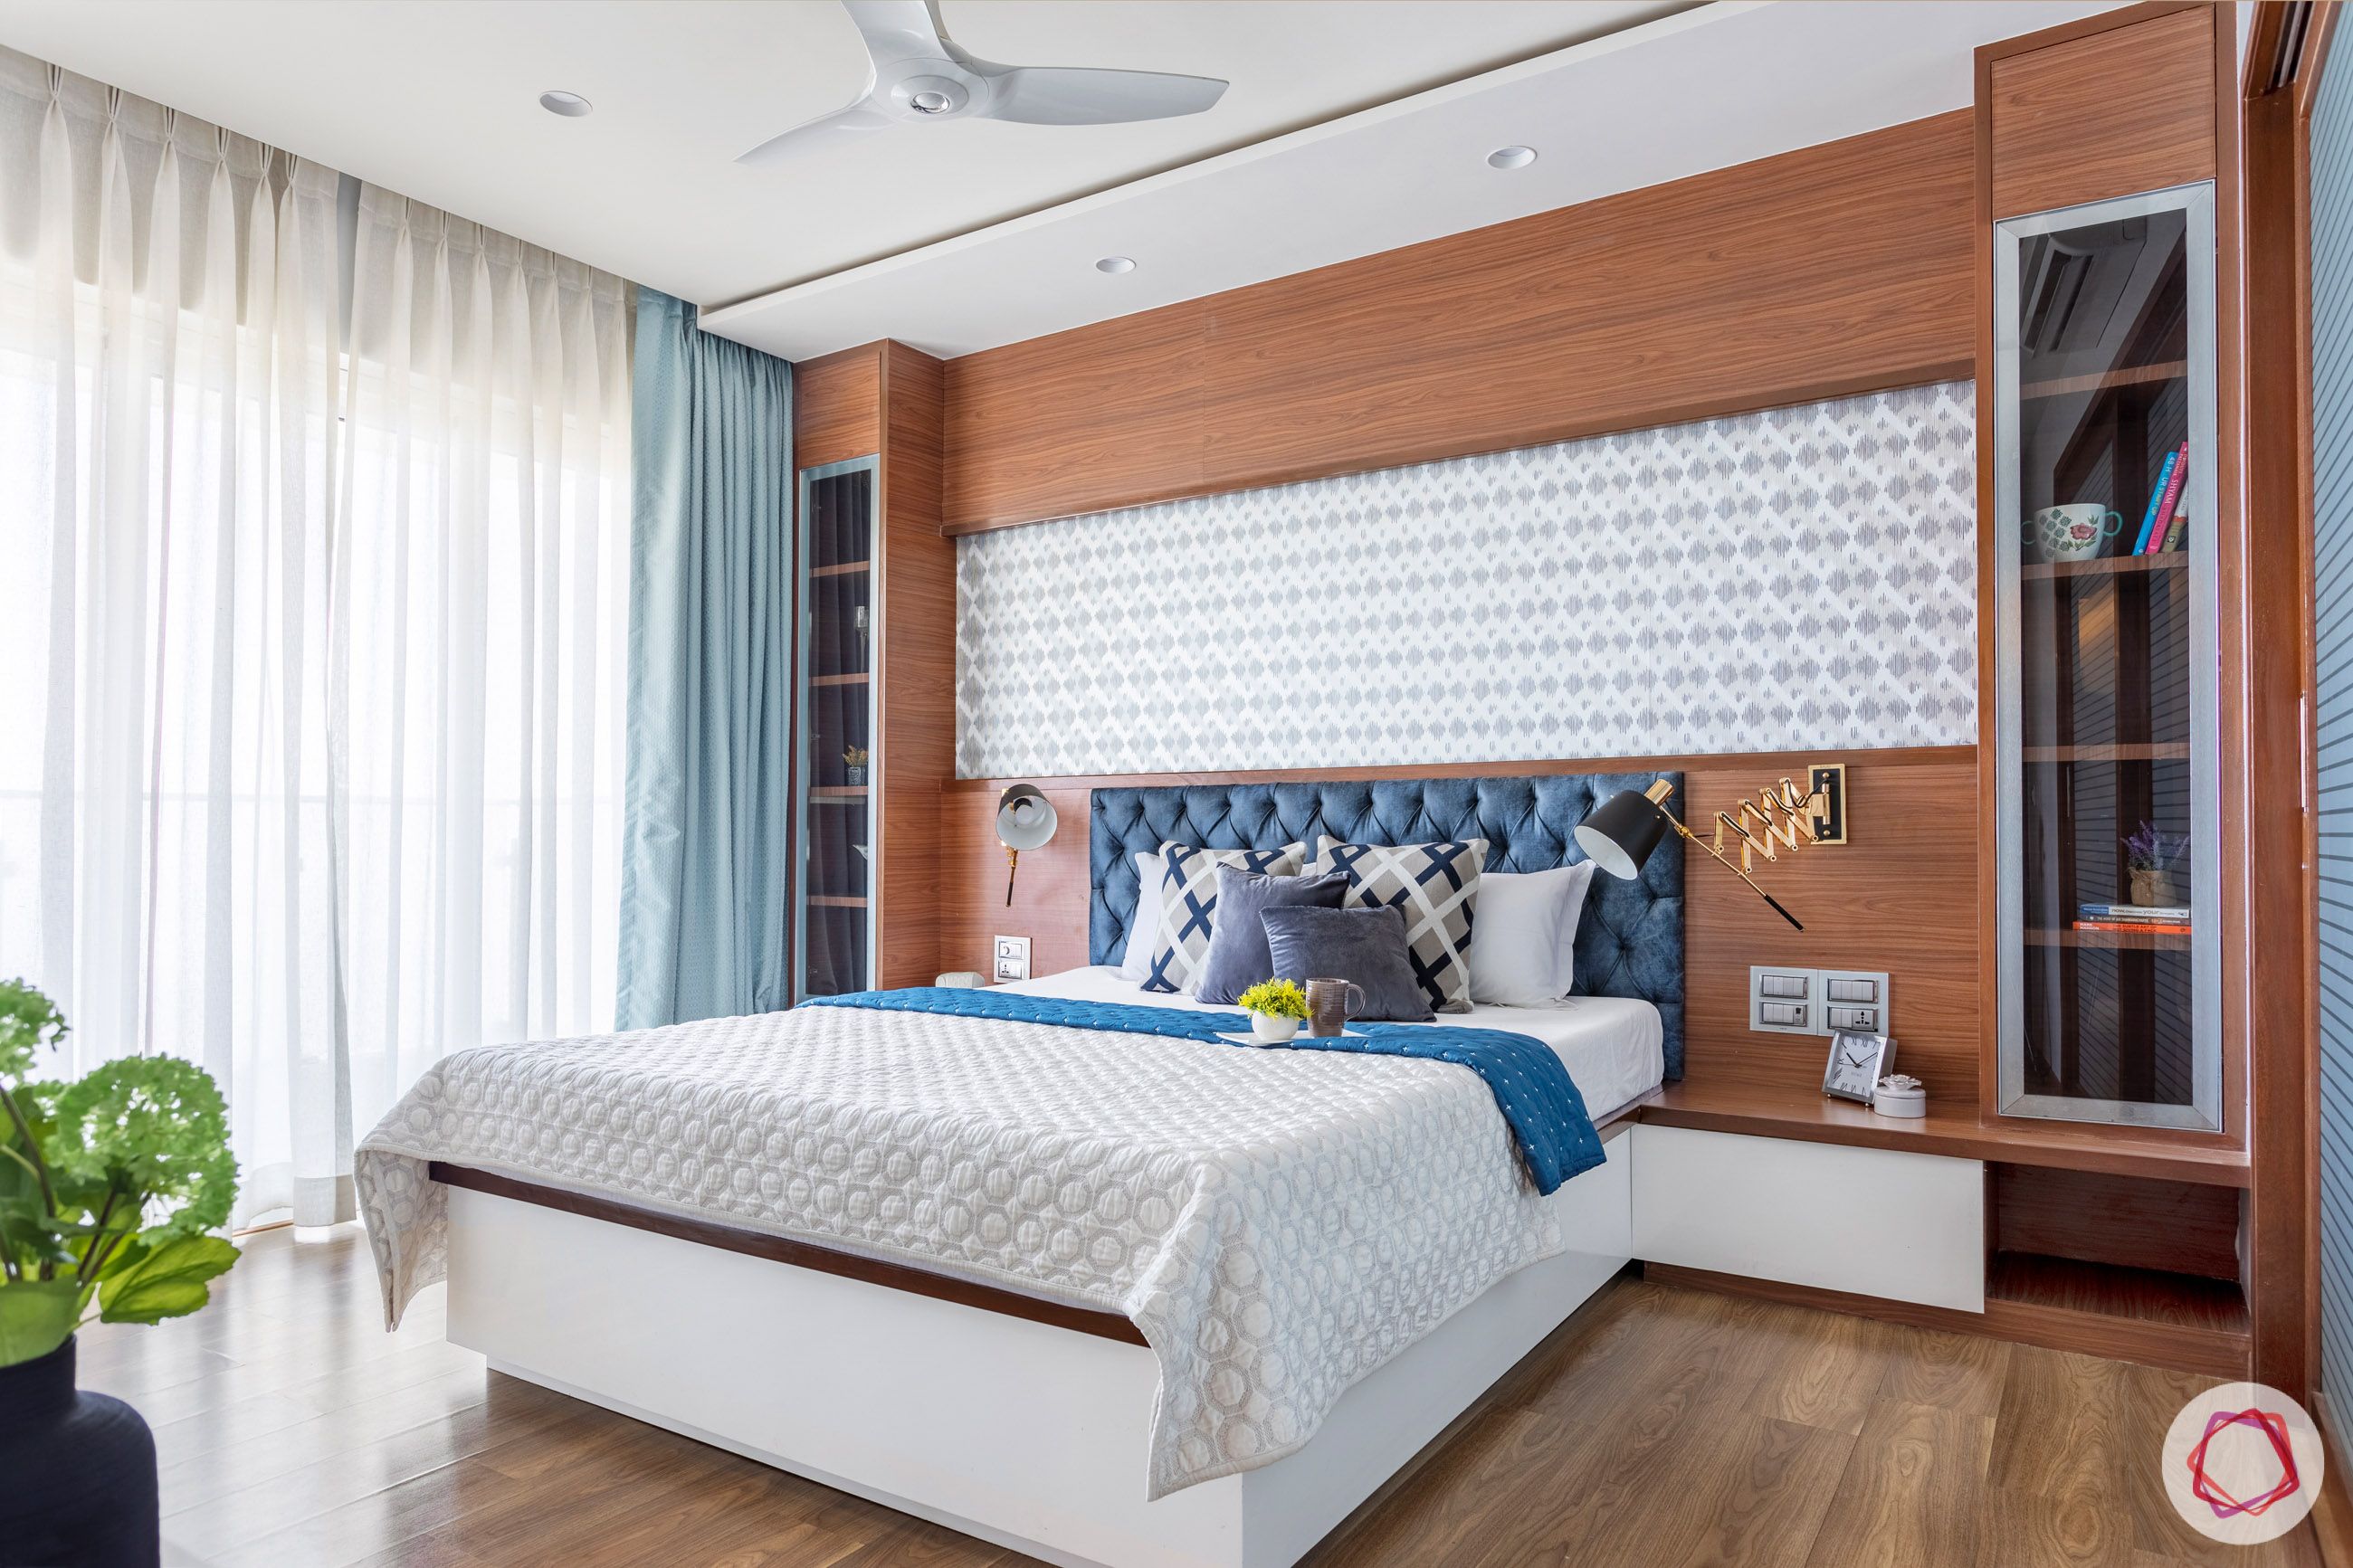 bedroom-blue-headboard-wallpaper-cabinet-wooden-floor